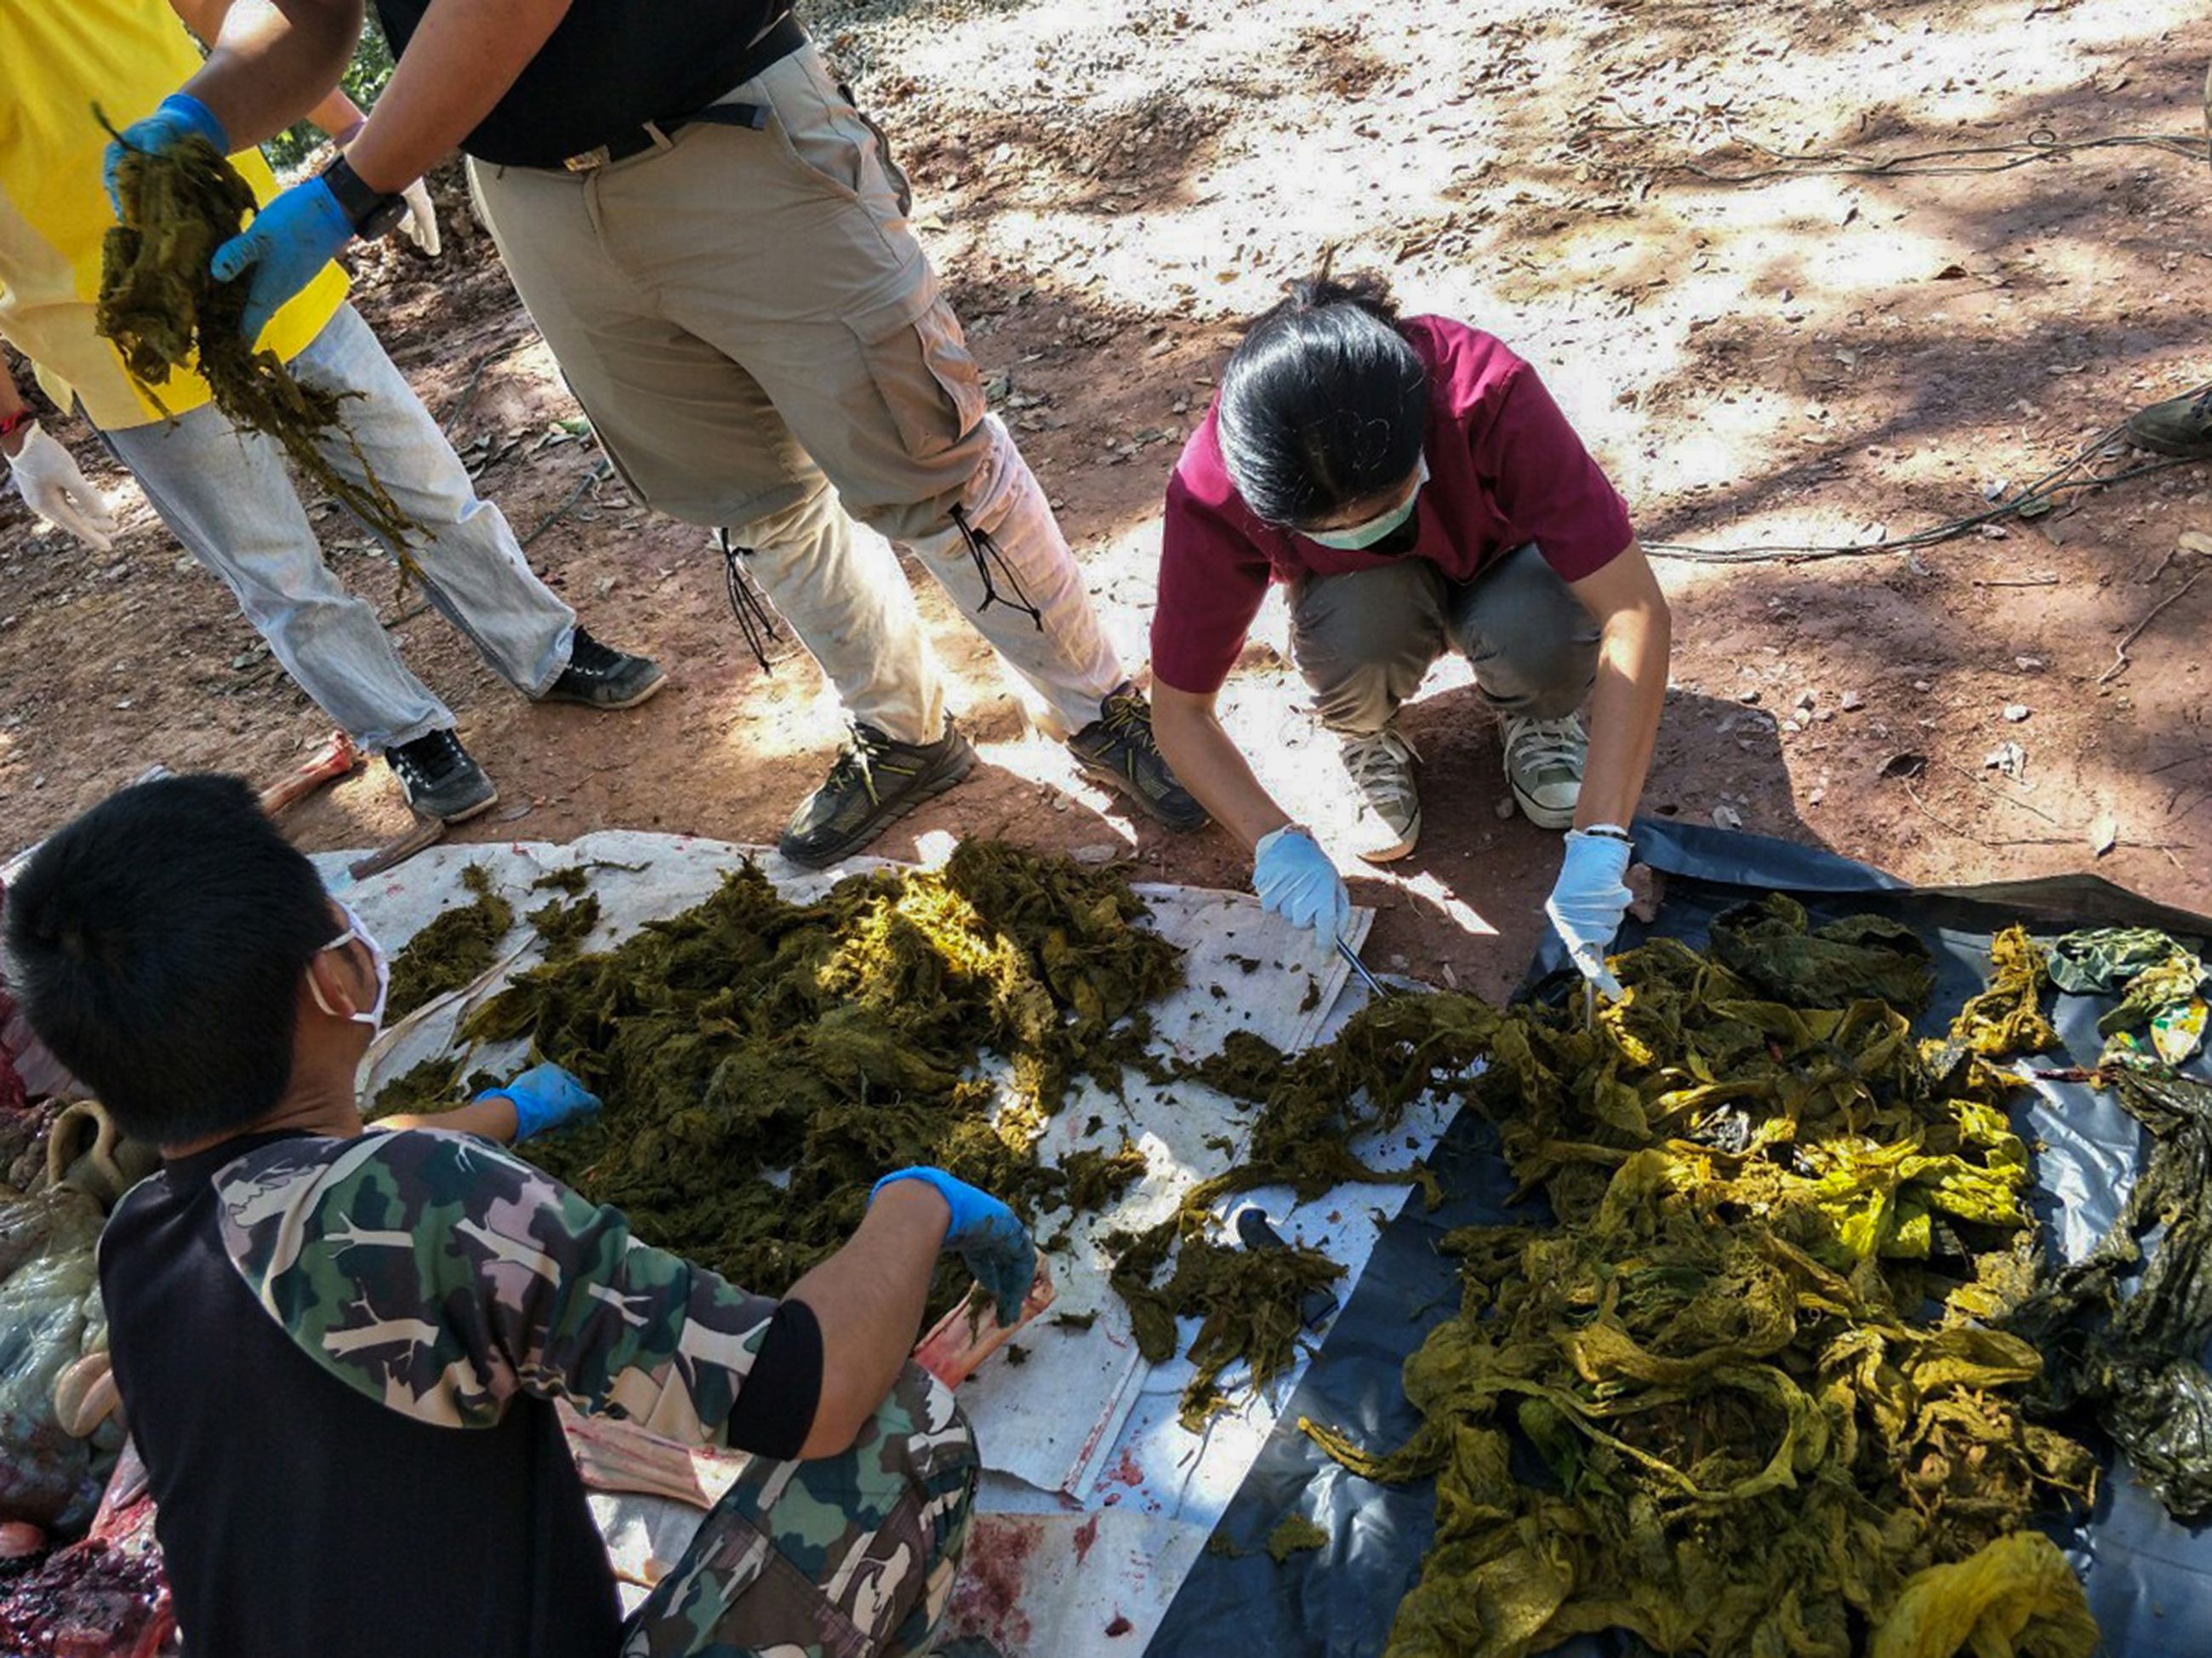 Veterinarios examinan piezas de desechos plásticos recuperados del estómago de un ciervo muerto en el Parque Nacional Khun Sathan en la provincia de Nan en Tailandia. (Foto Prensa Libre: AFP)